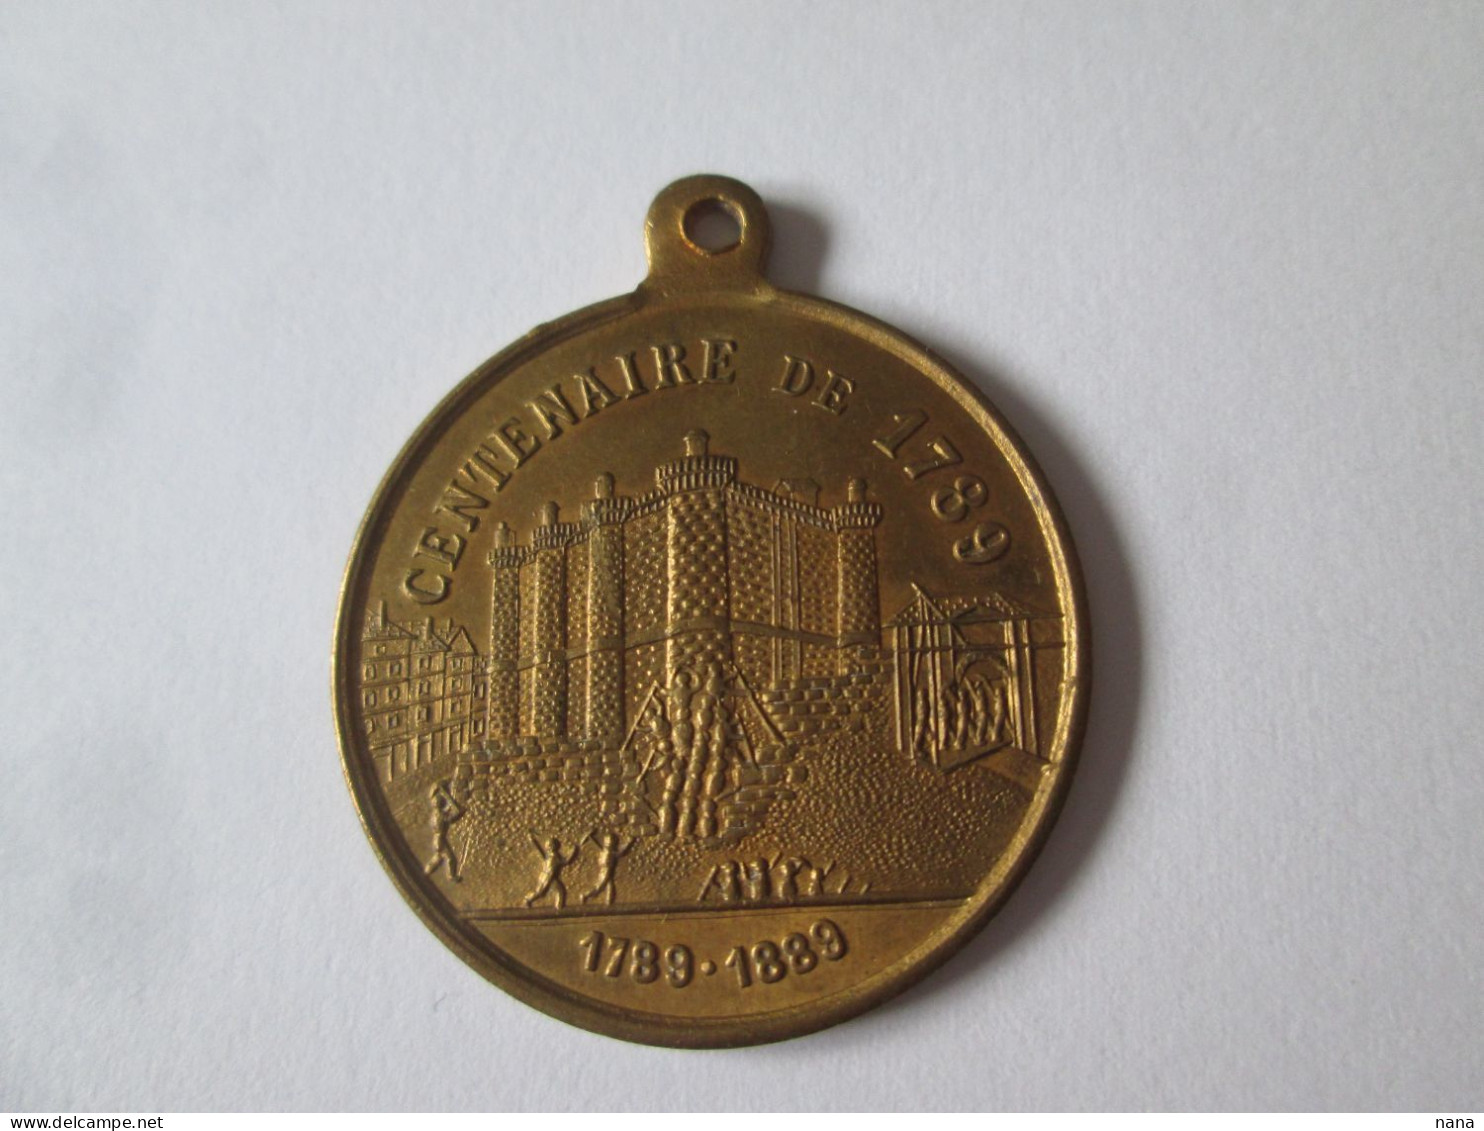 France Medaille:Expo.Univ.Paris 1889-Centenaire De La Bastille/France Medal:Paris Univ.Exhib.1889-Centenary Of Bastille - Frankrijk